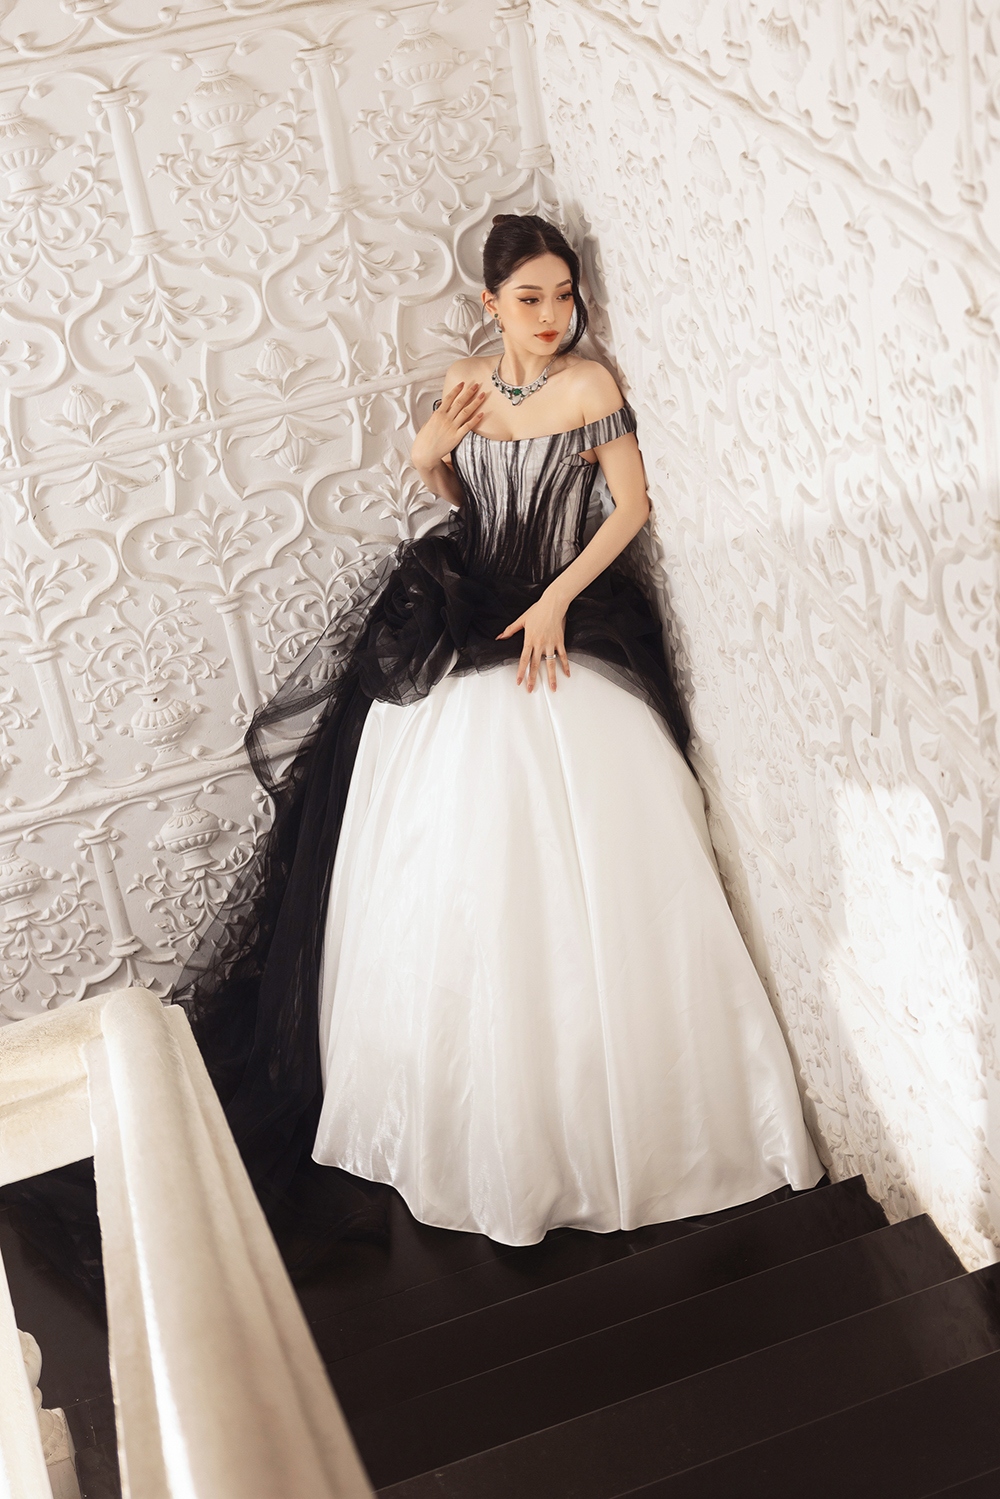 Cận cảnh bộ váy lấy cảm hứng từ thư pháp Việt của Á hậu Phương Nga tại Cannes - Ảnh 10.